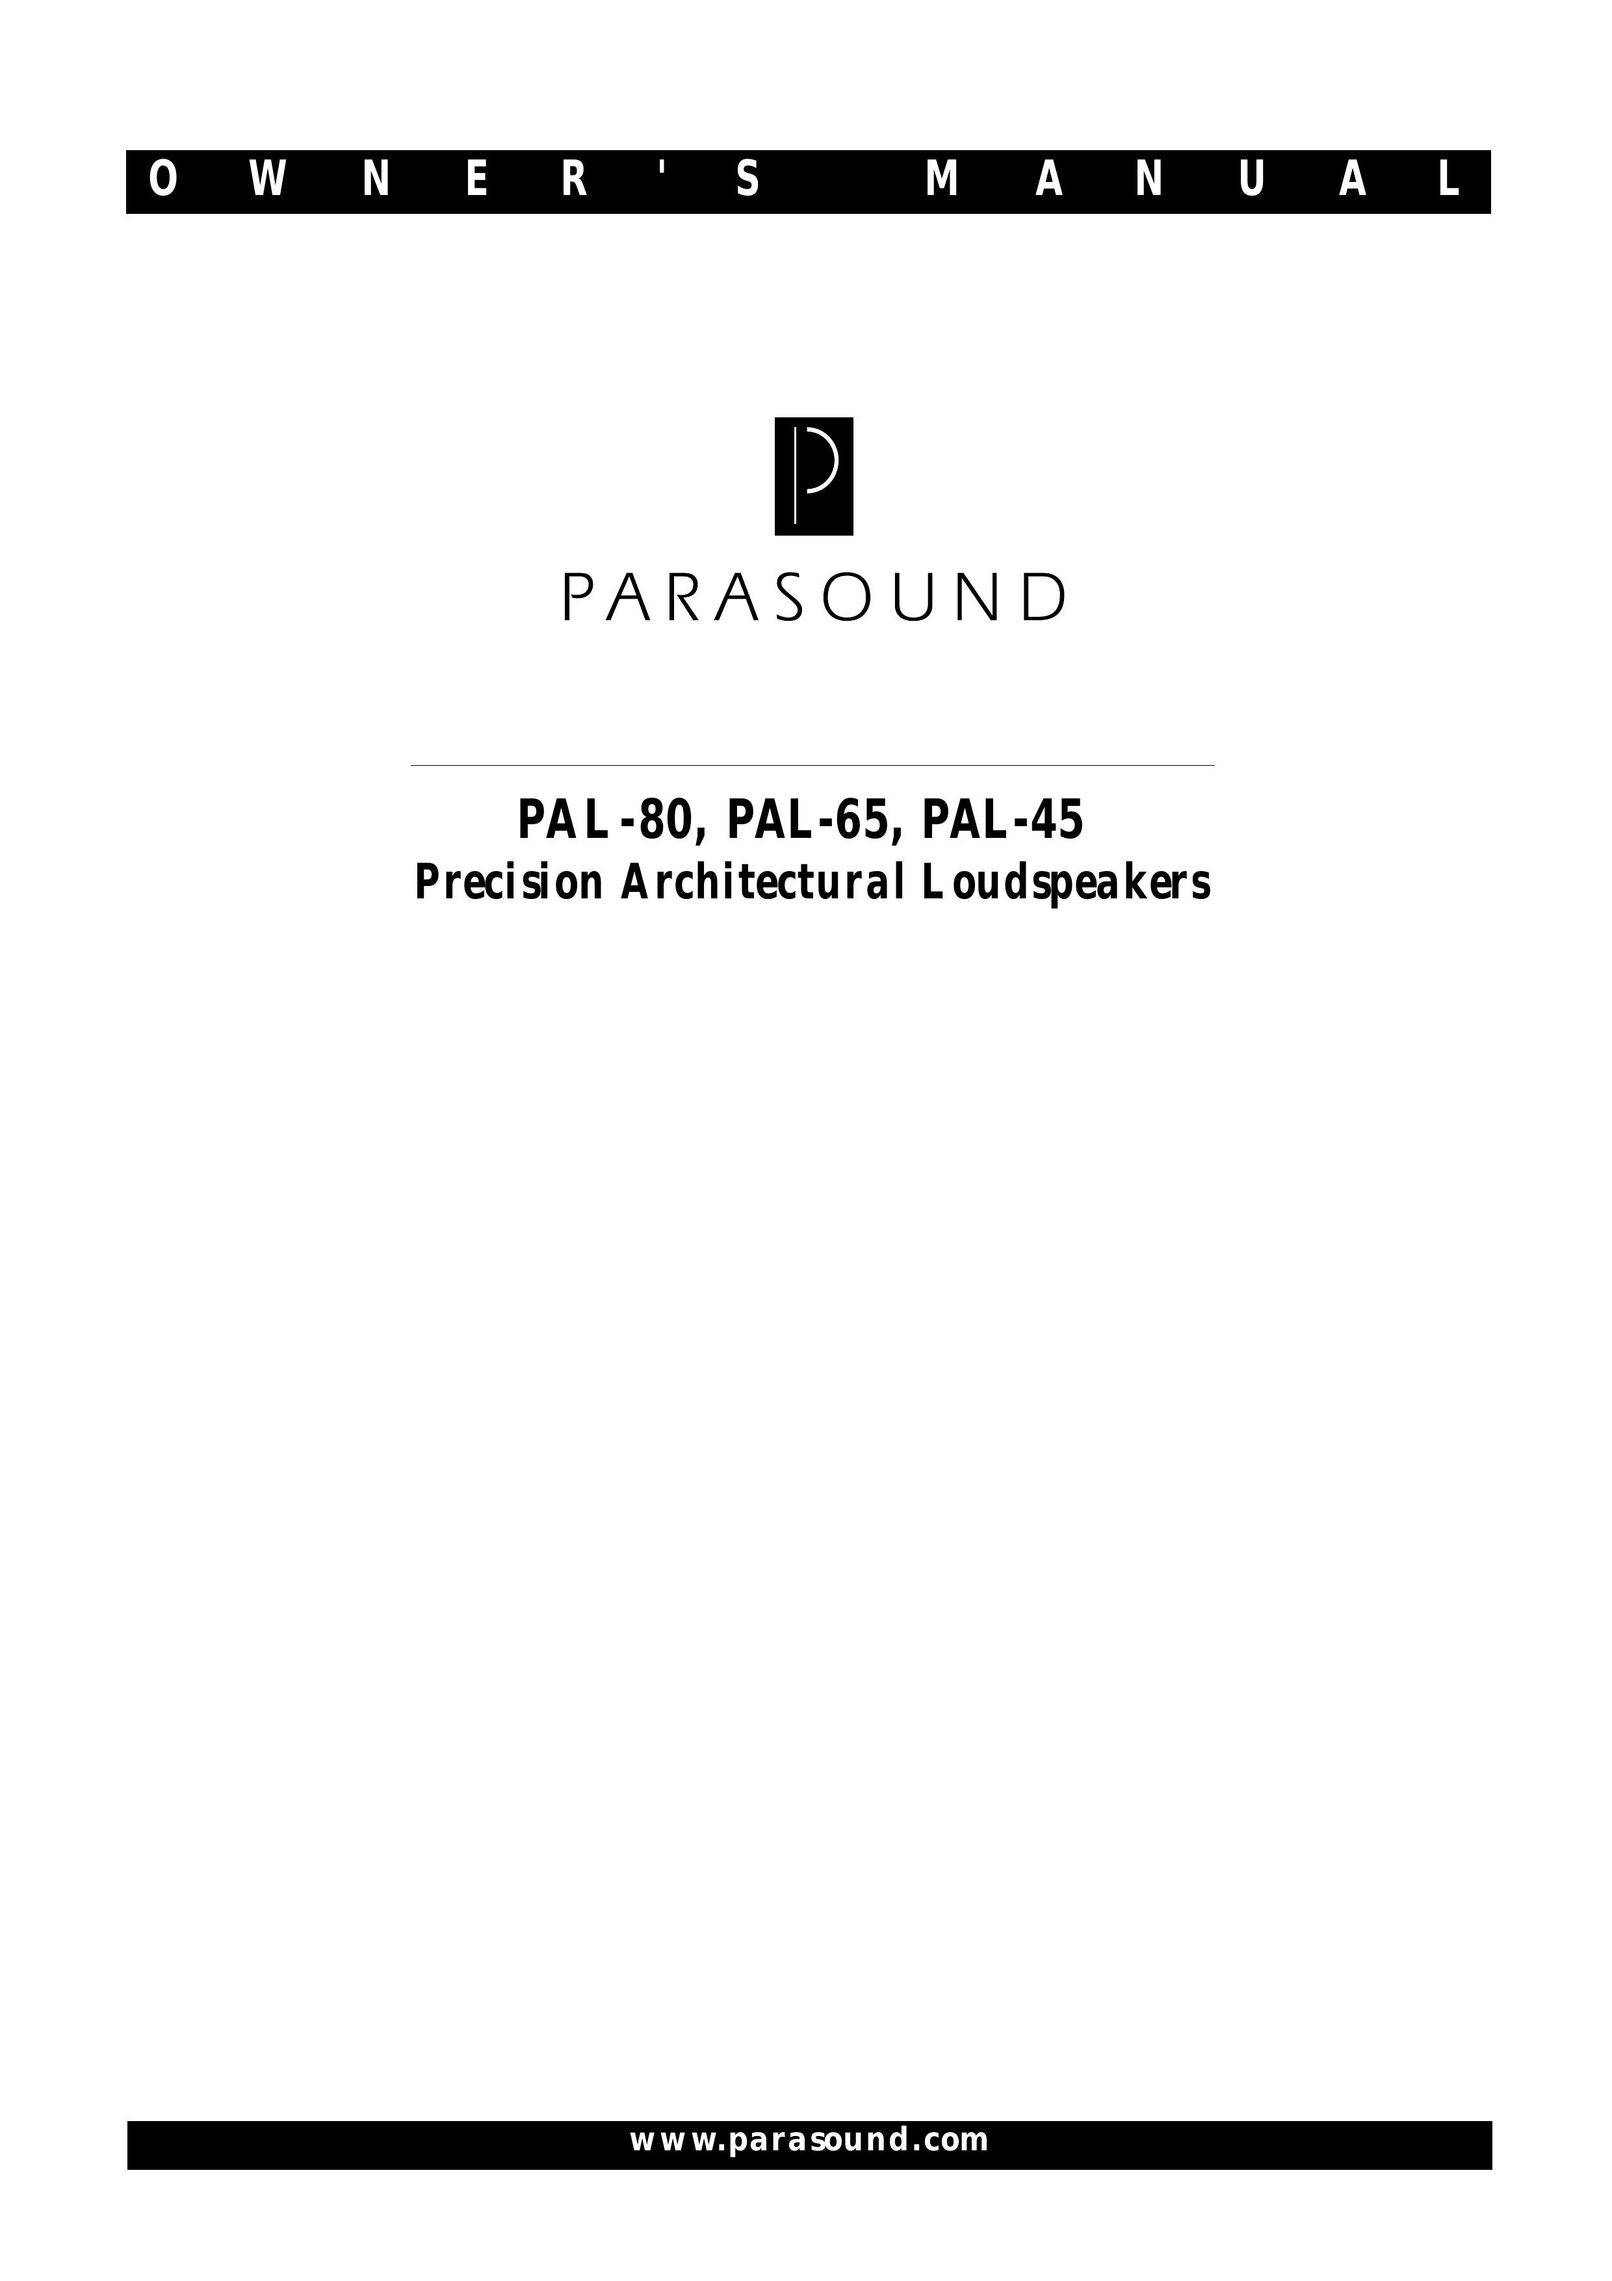 Parasound PAL-45 Portable Speaker User Manual